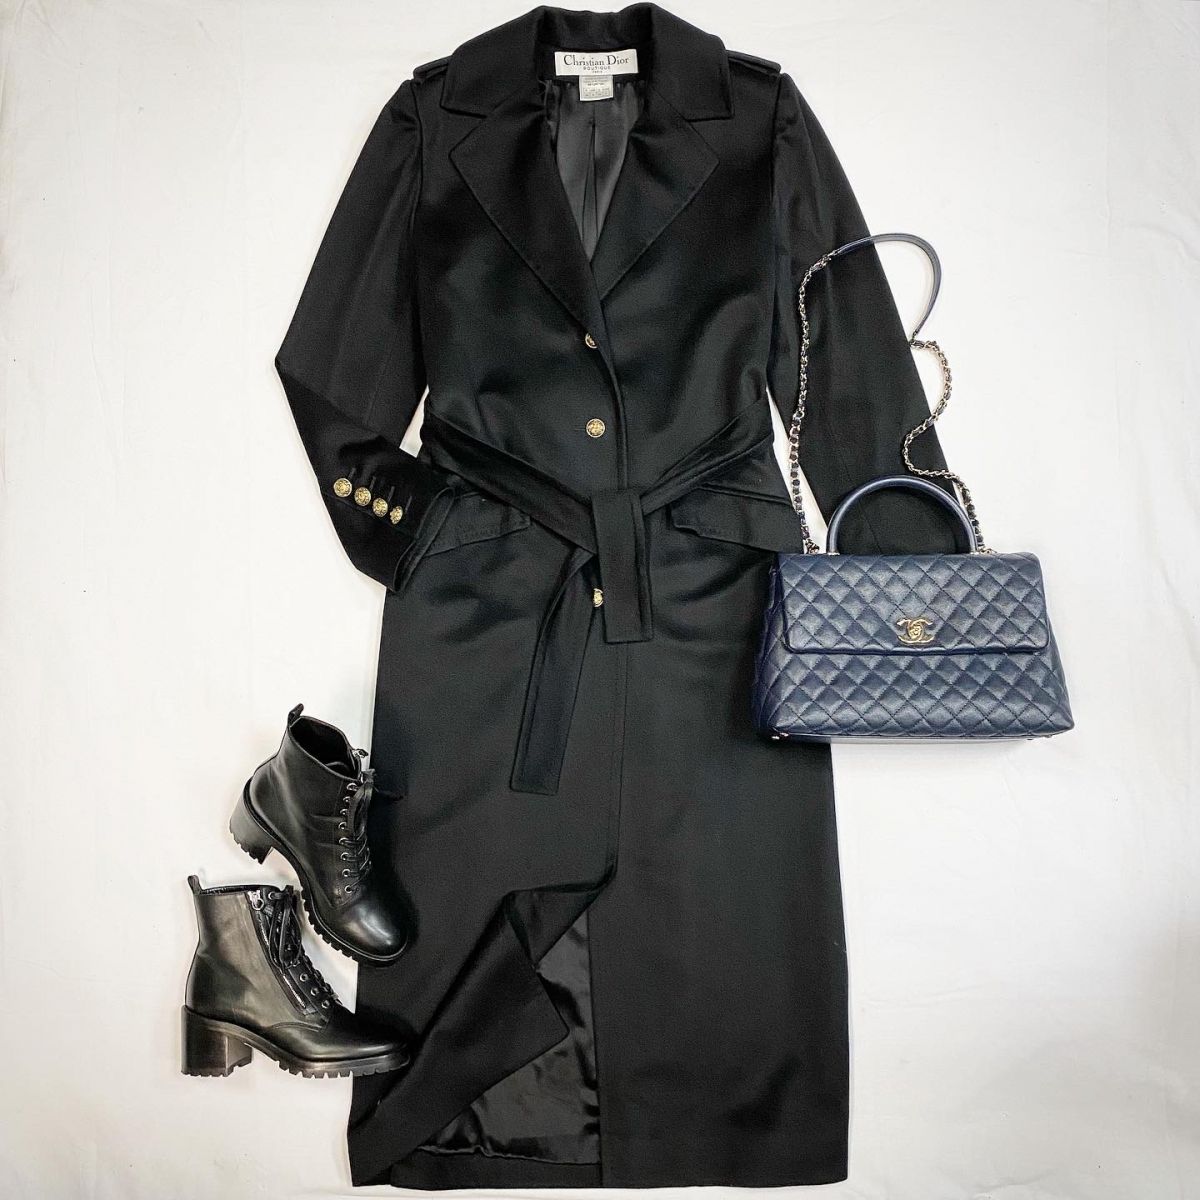 Пальто / кашемир / шёлковая подкладка / Christian Dior размер 36 цена 123 847 руб Ботинки Gianvito Rossi размер 37 цена 30 770 руб Сумка Chanel